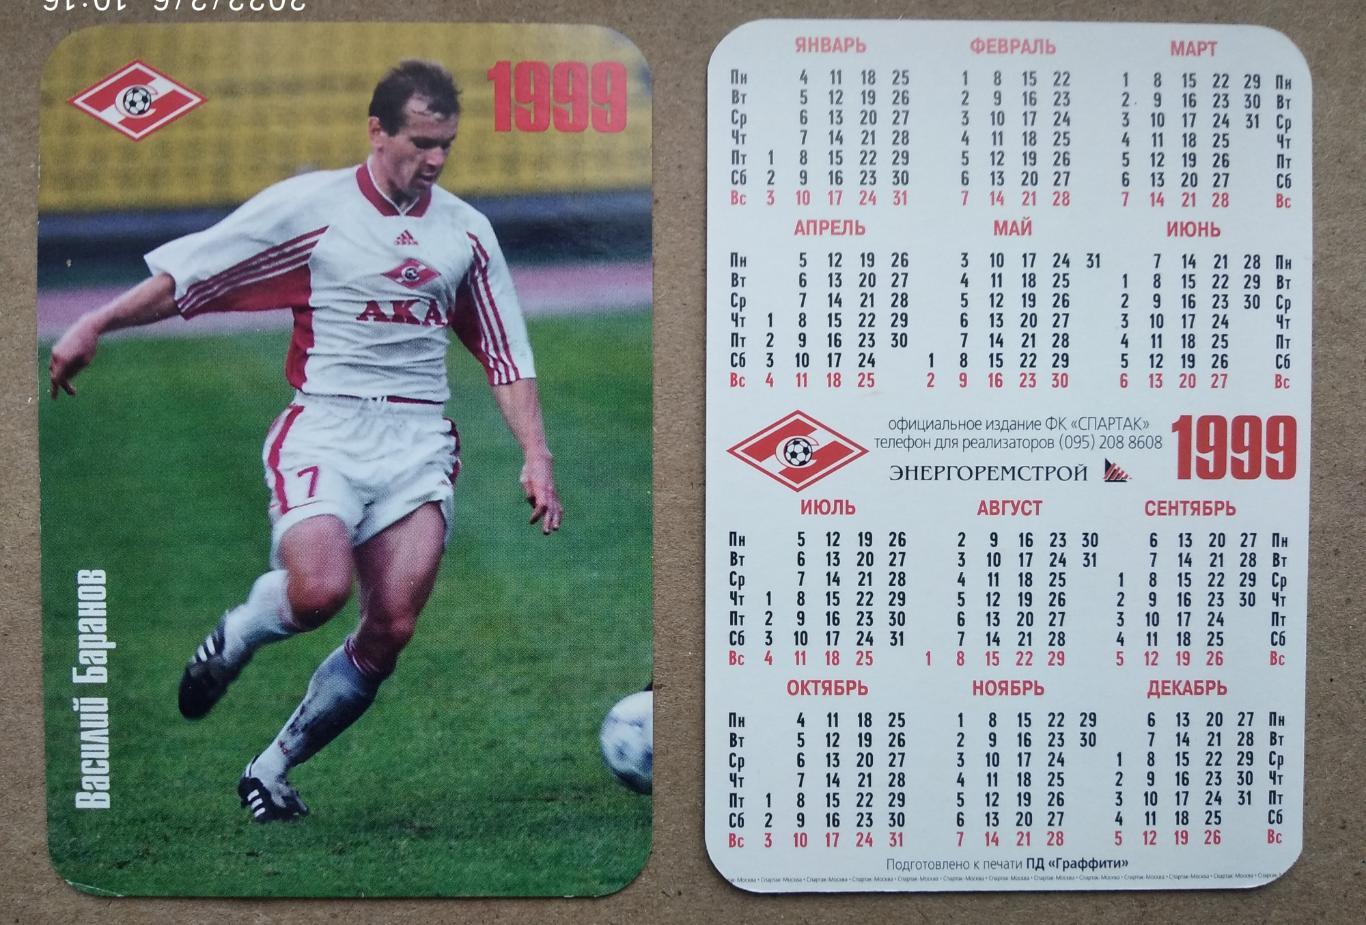 Спартак Москва - Баранов, календарик на 1999 год, официальное издание